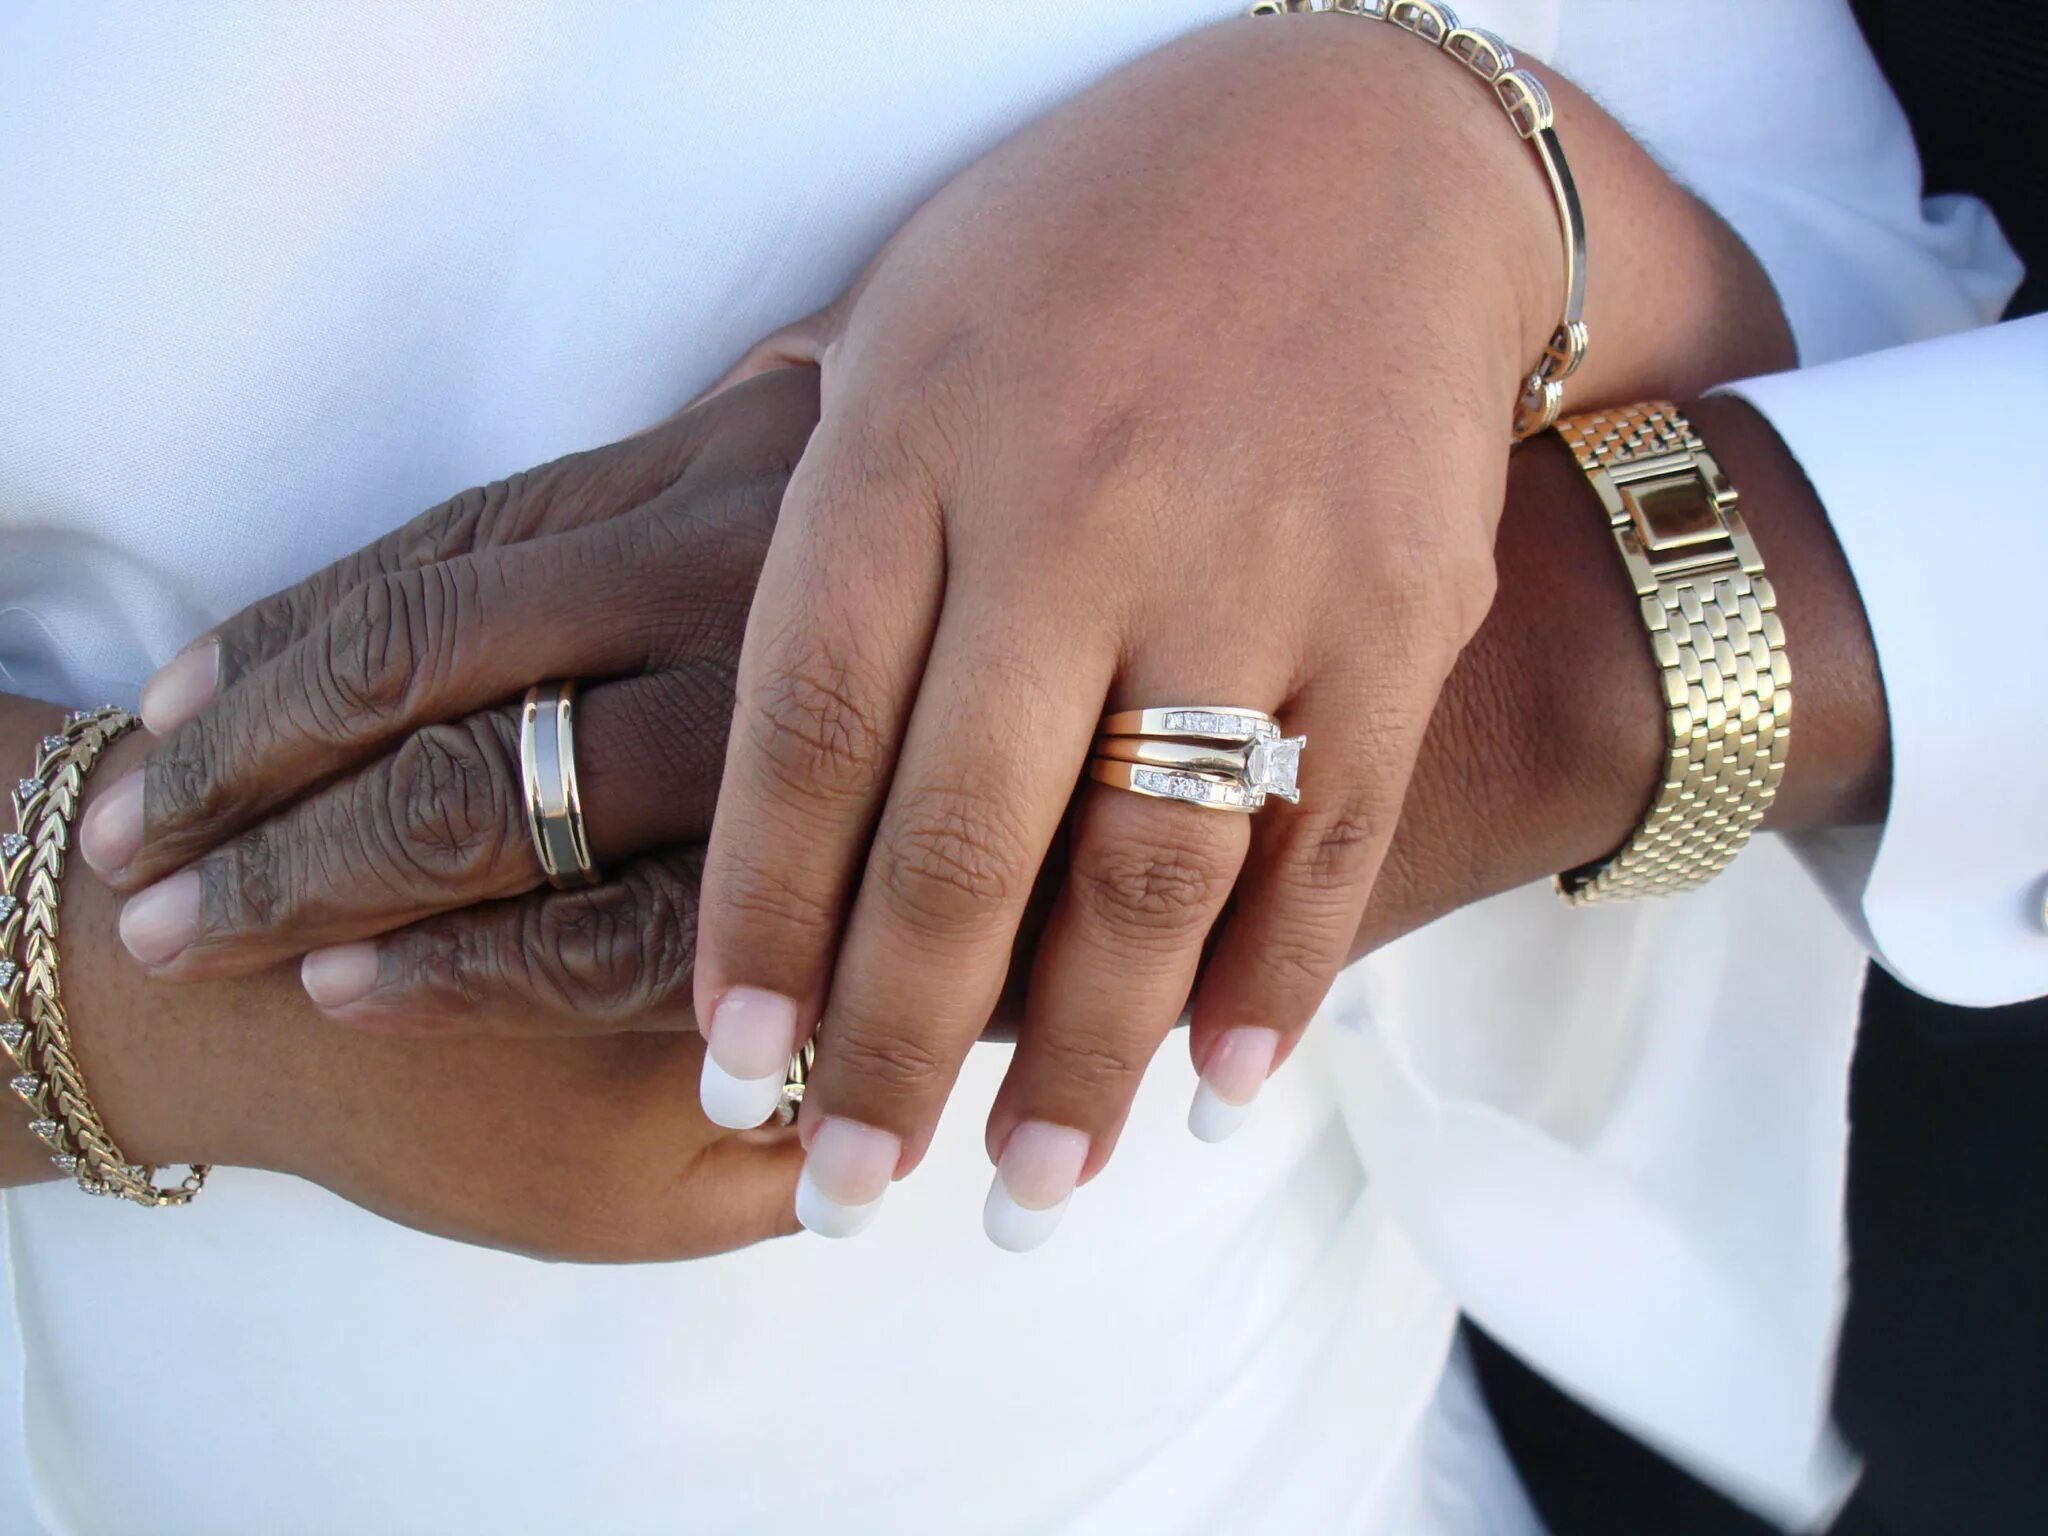 Кольцо замужества. Свадебные кольца на руках. Брак с иностранцем. Мужские обручальные кольца на руке. Современные обручальные кольца на руке.